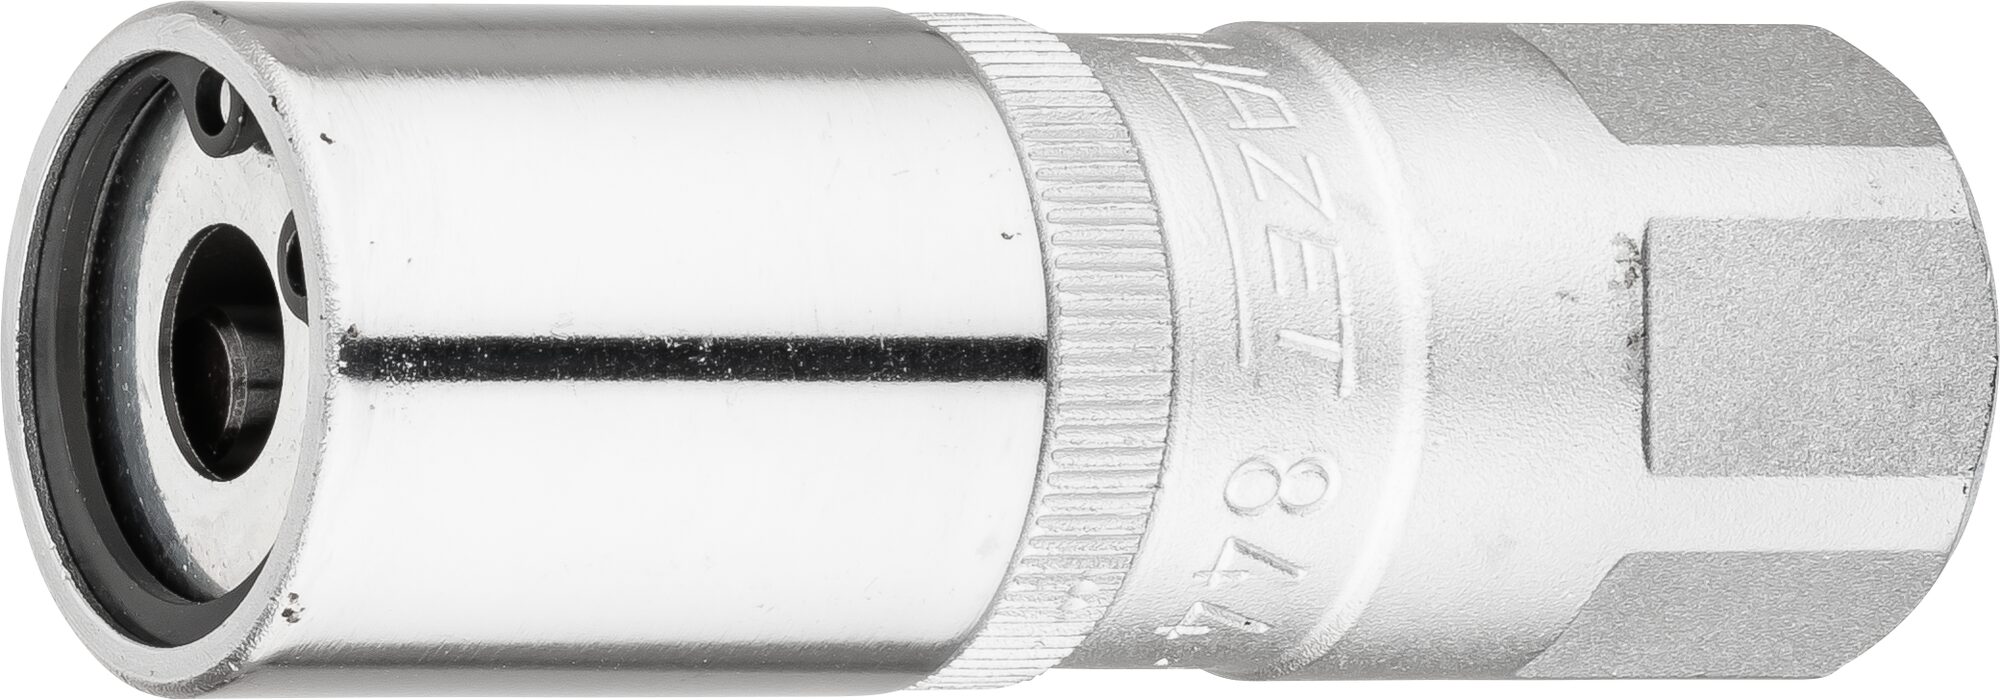 HAZET Stehbolzen-Ausdreher 844-7 · Vierkant hohl 12,5 mm (1/2 Zoll) · 23 mm